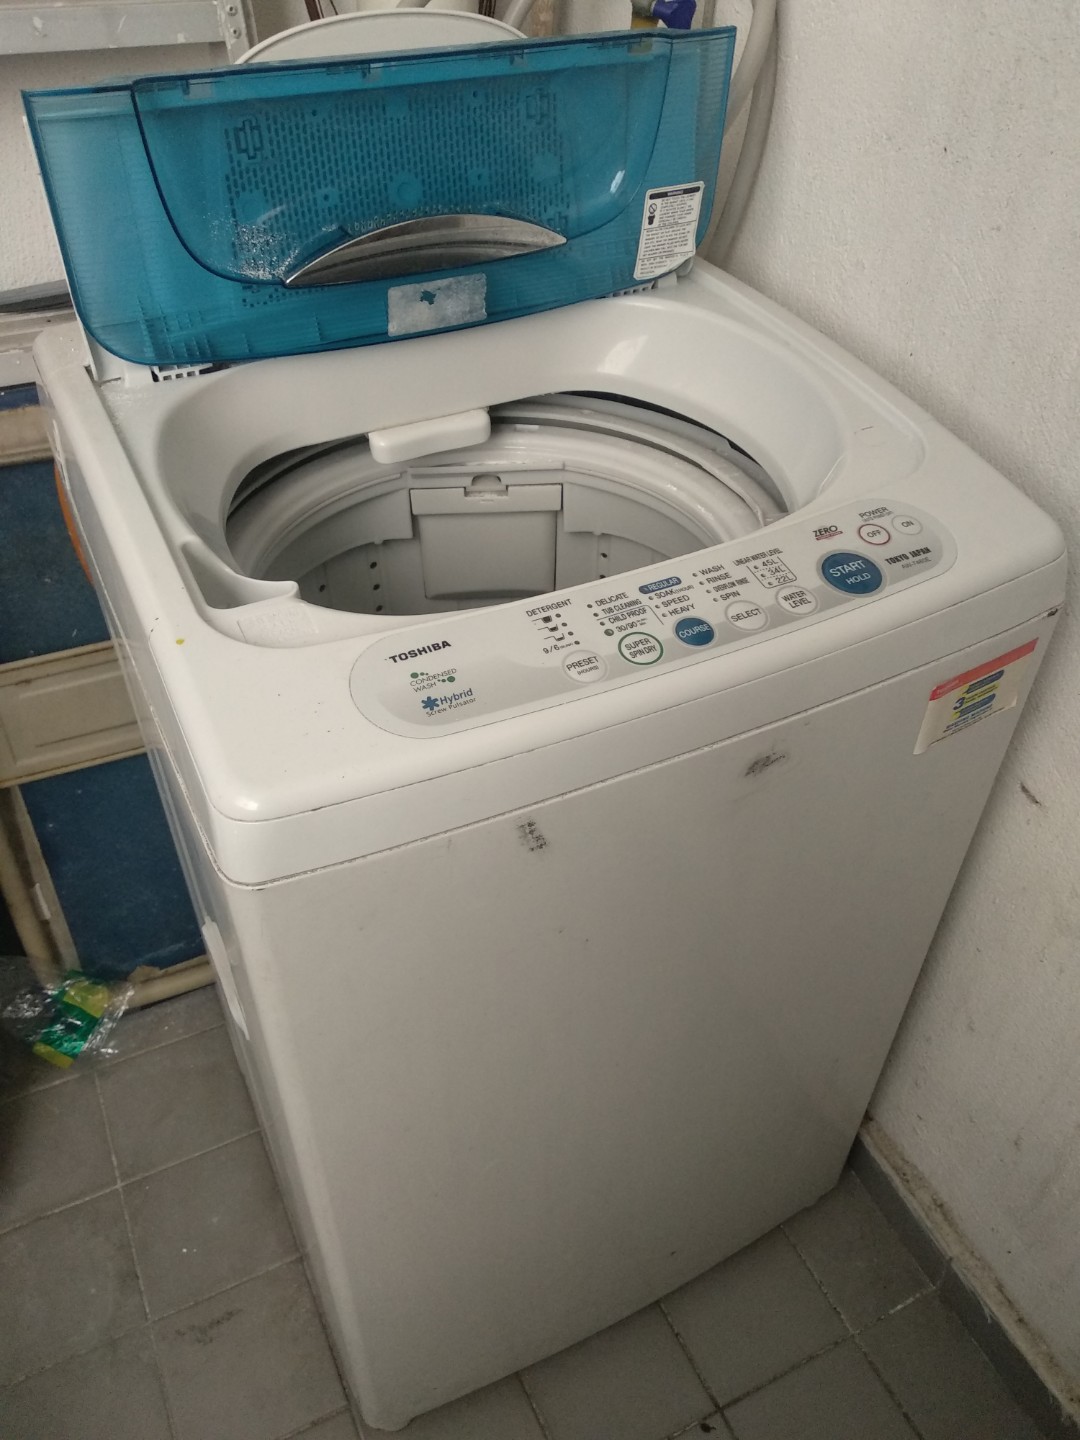 Toshiba Aw 7480e Washing Machine For Sale Kitchen Appliances On Carousell